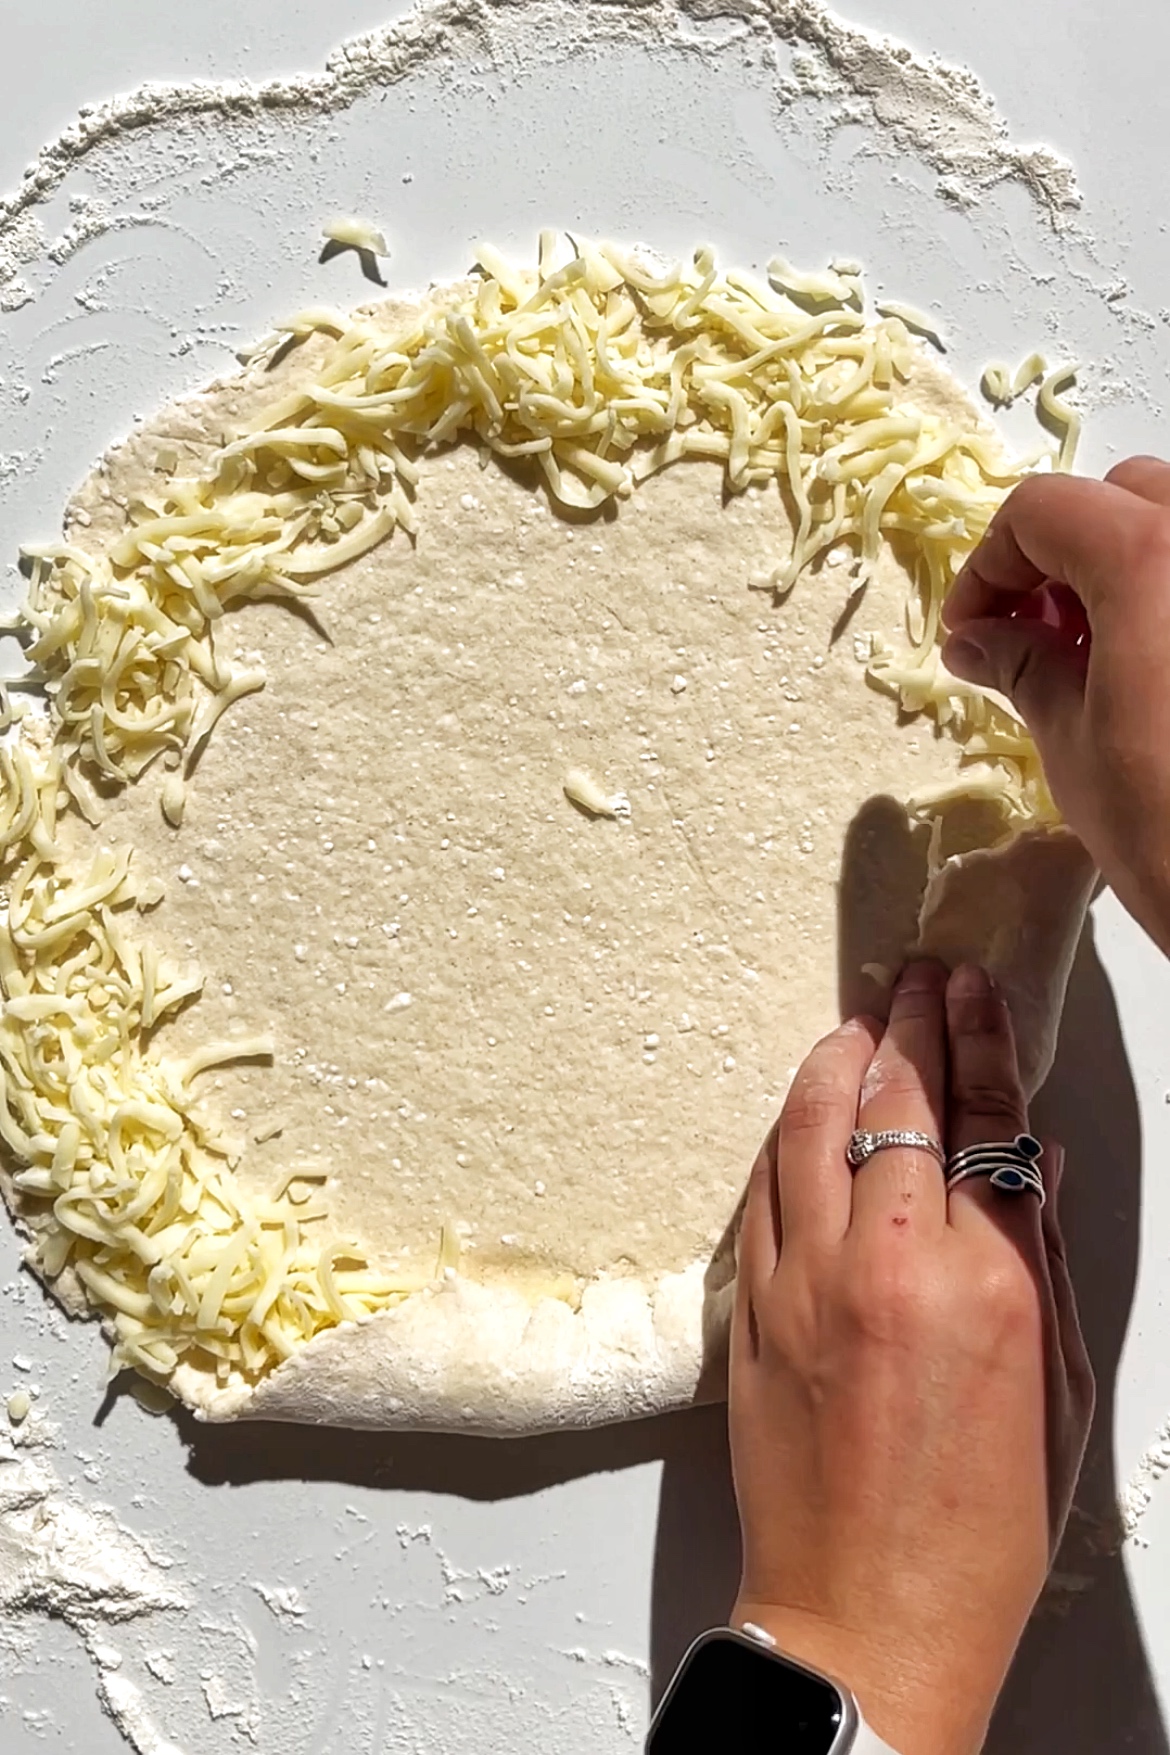 Homemade pizza dough with a mozzarella cheese crust.